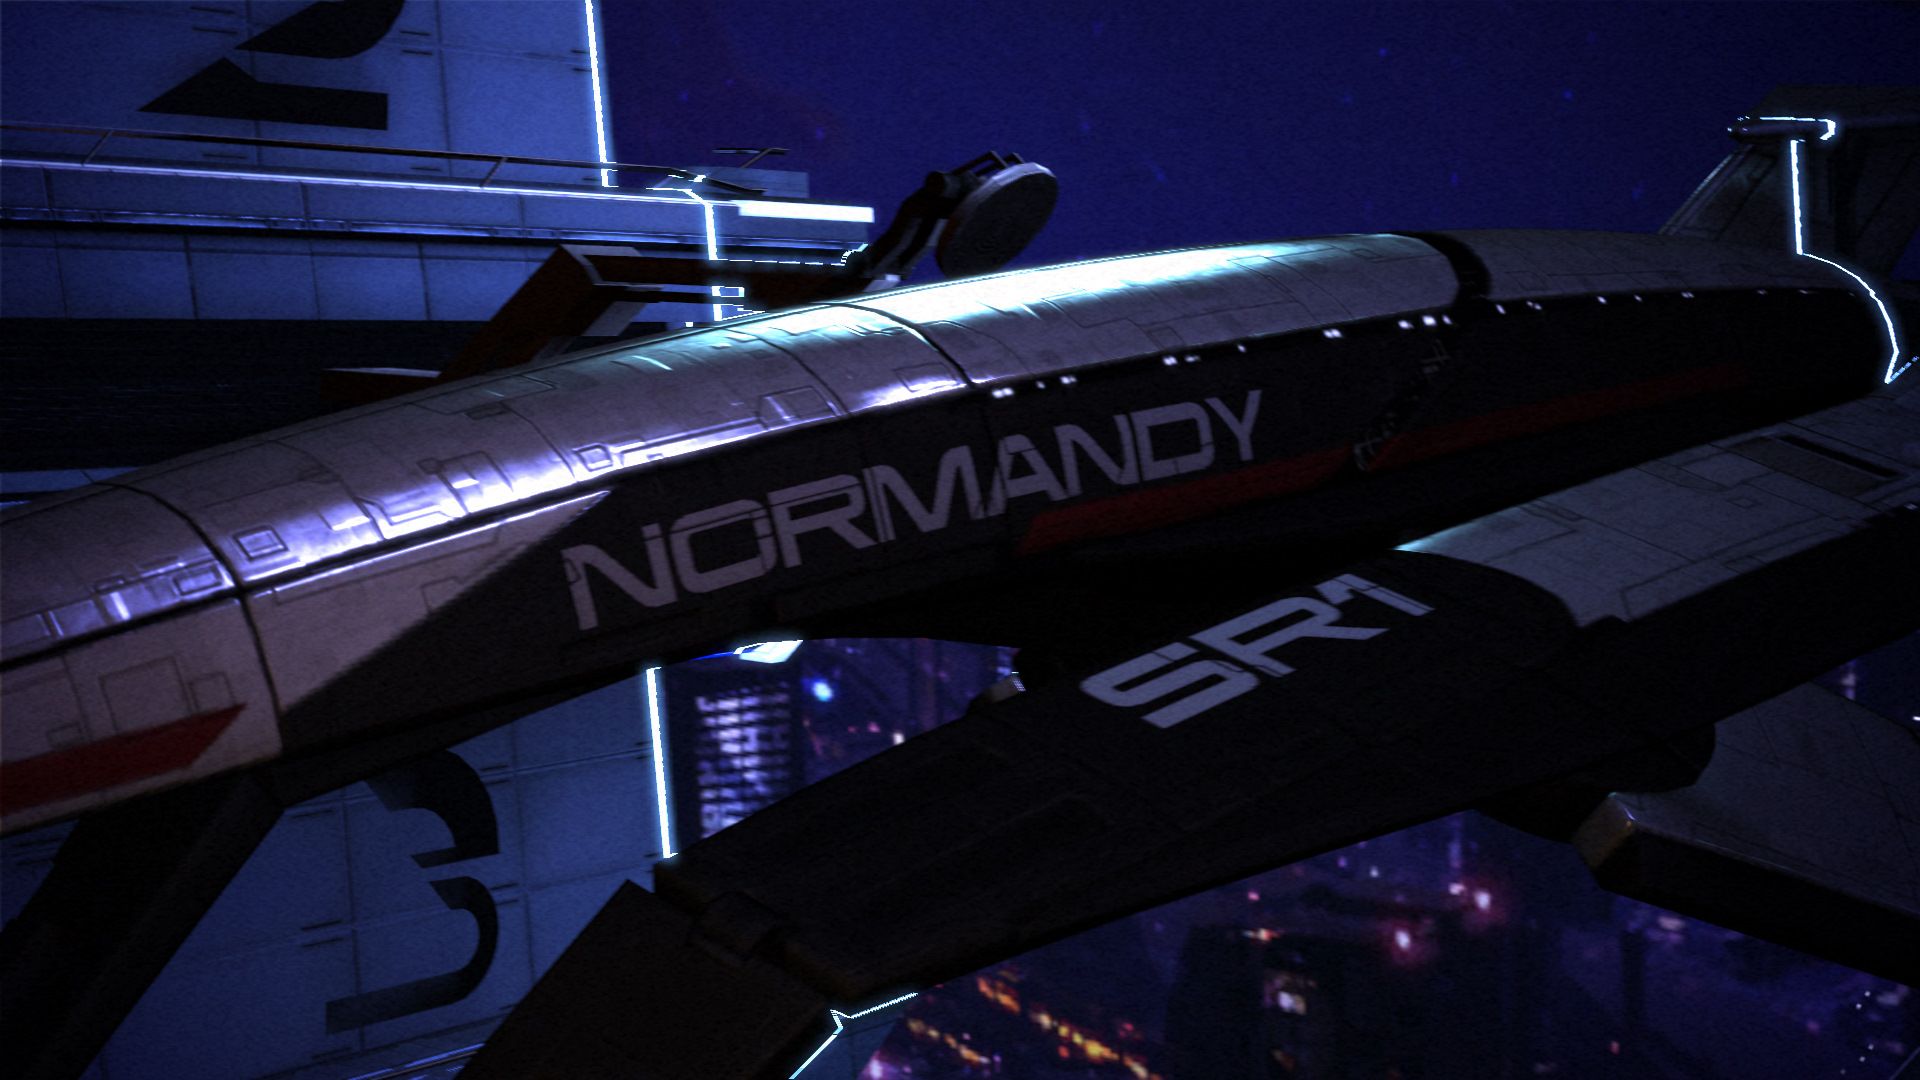 Mass Effect Normandy Wallpaper | Josh@home